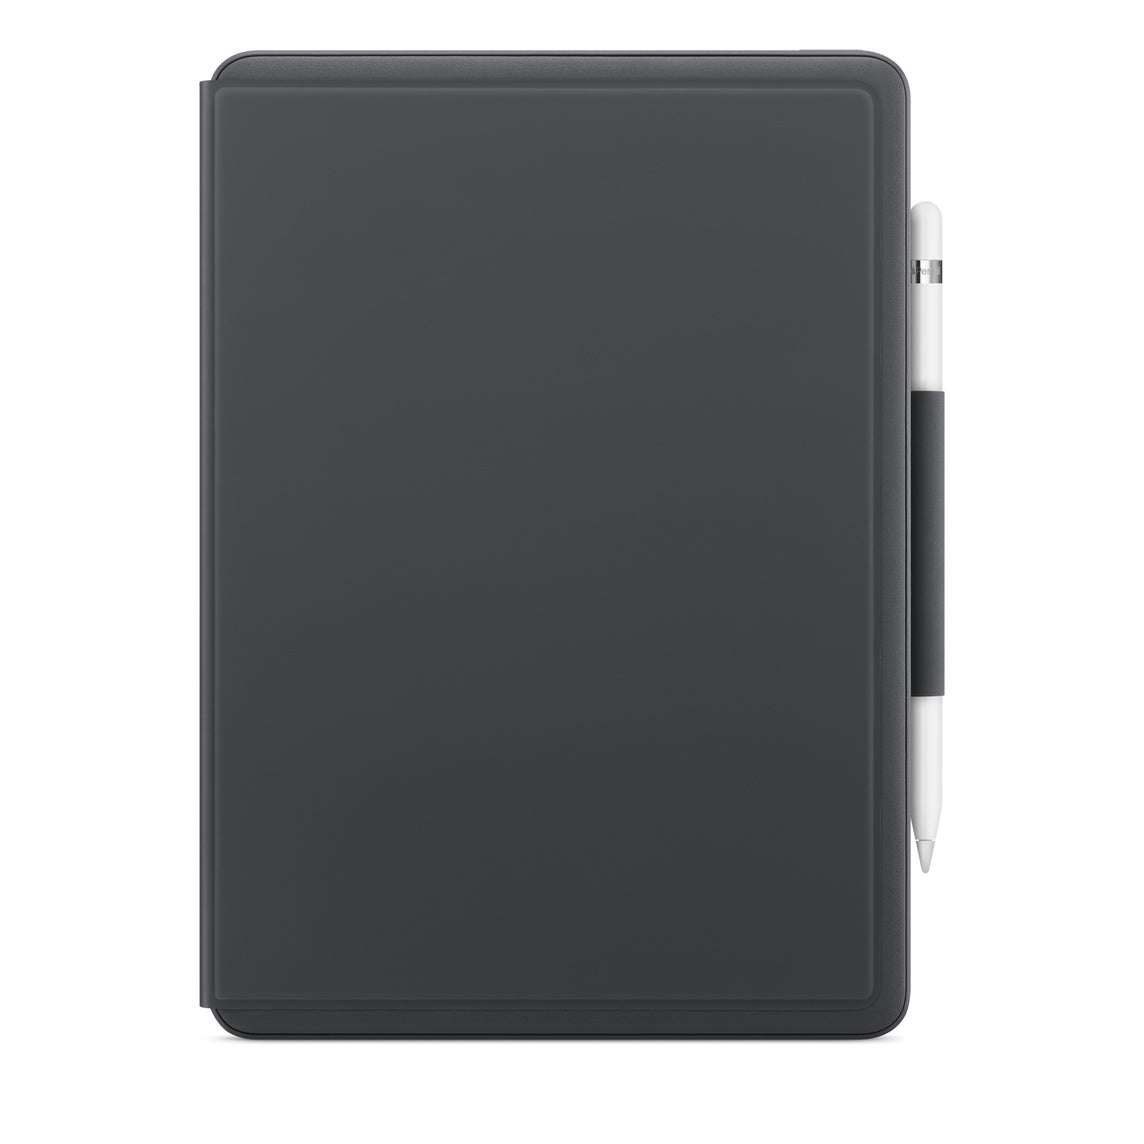 Logitech Slim Folio Case Bluetooth Keyboard for iPad (7th,8th,9th generation)